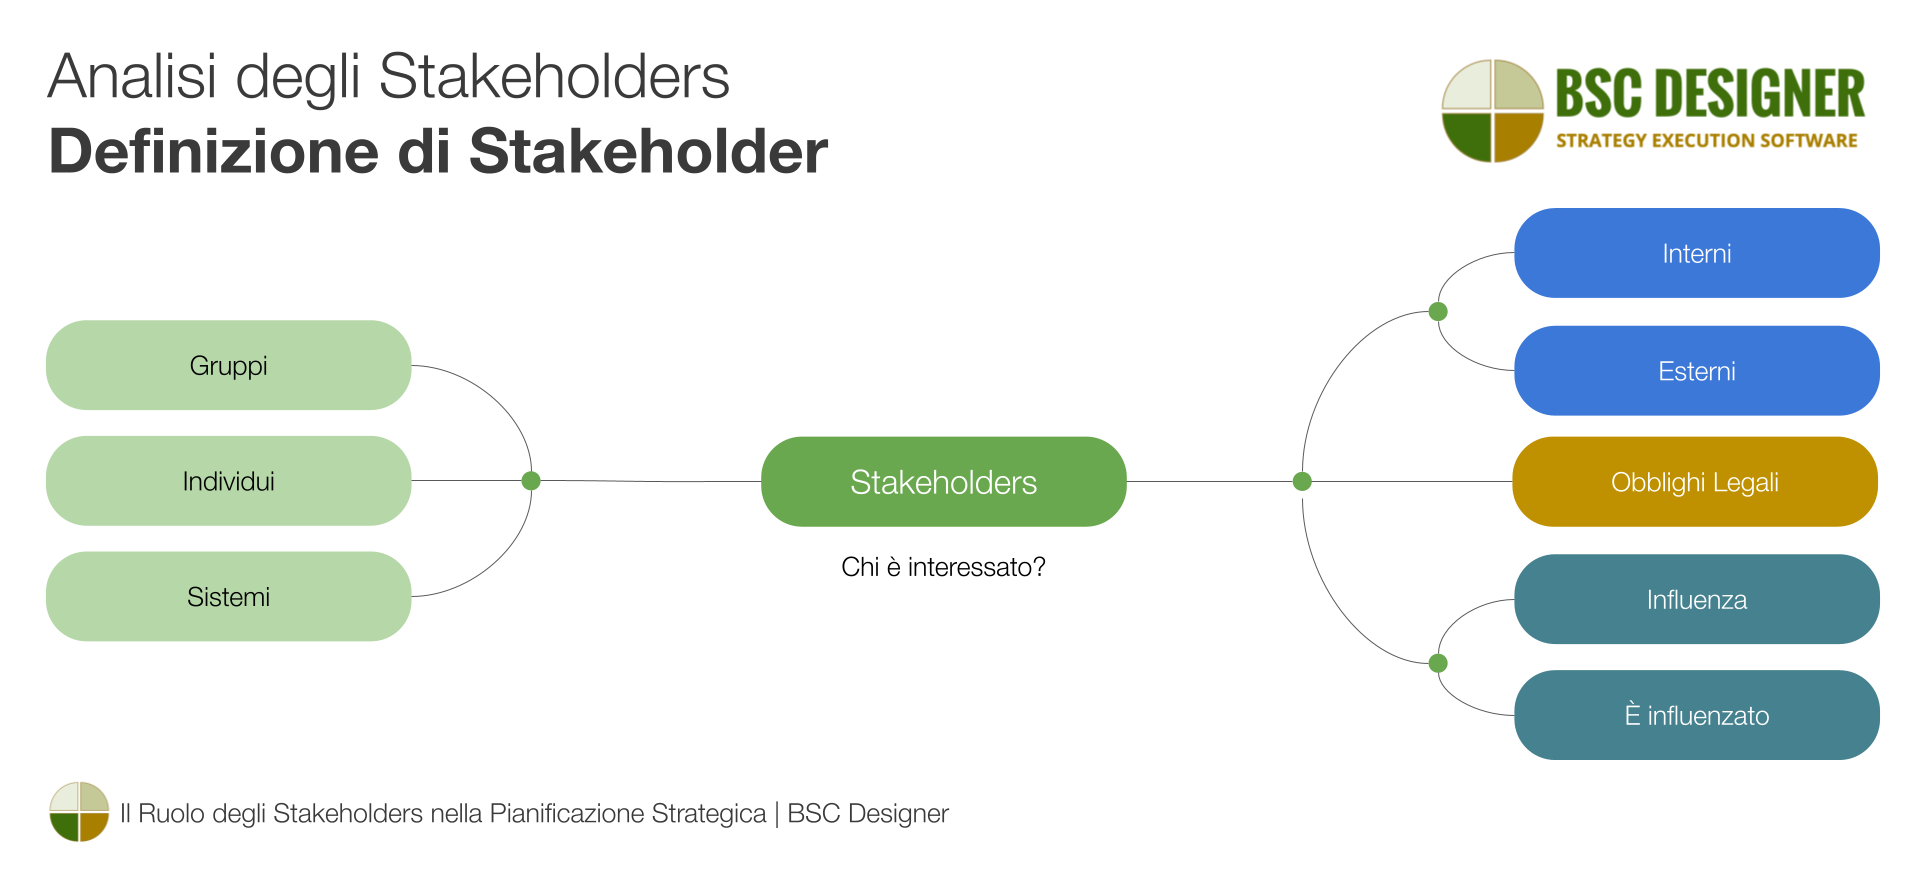 Analisi degli stakeholder - Definizione di stakeholder